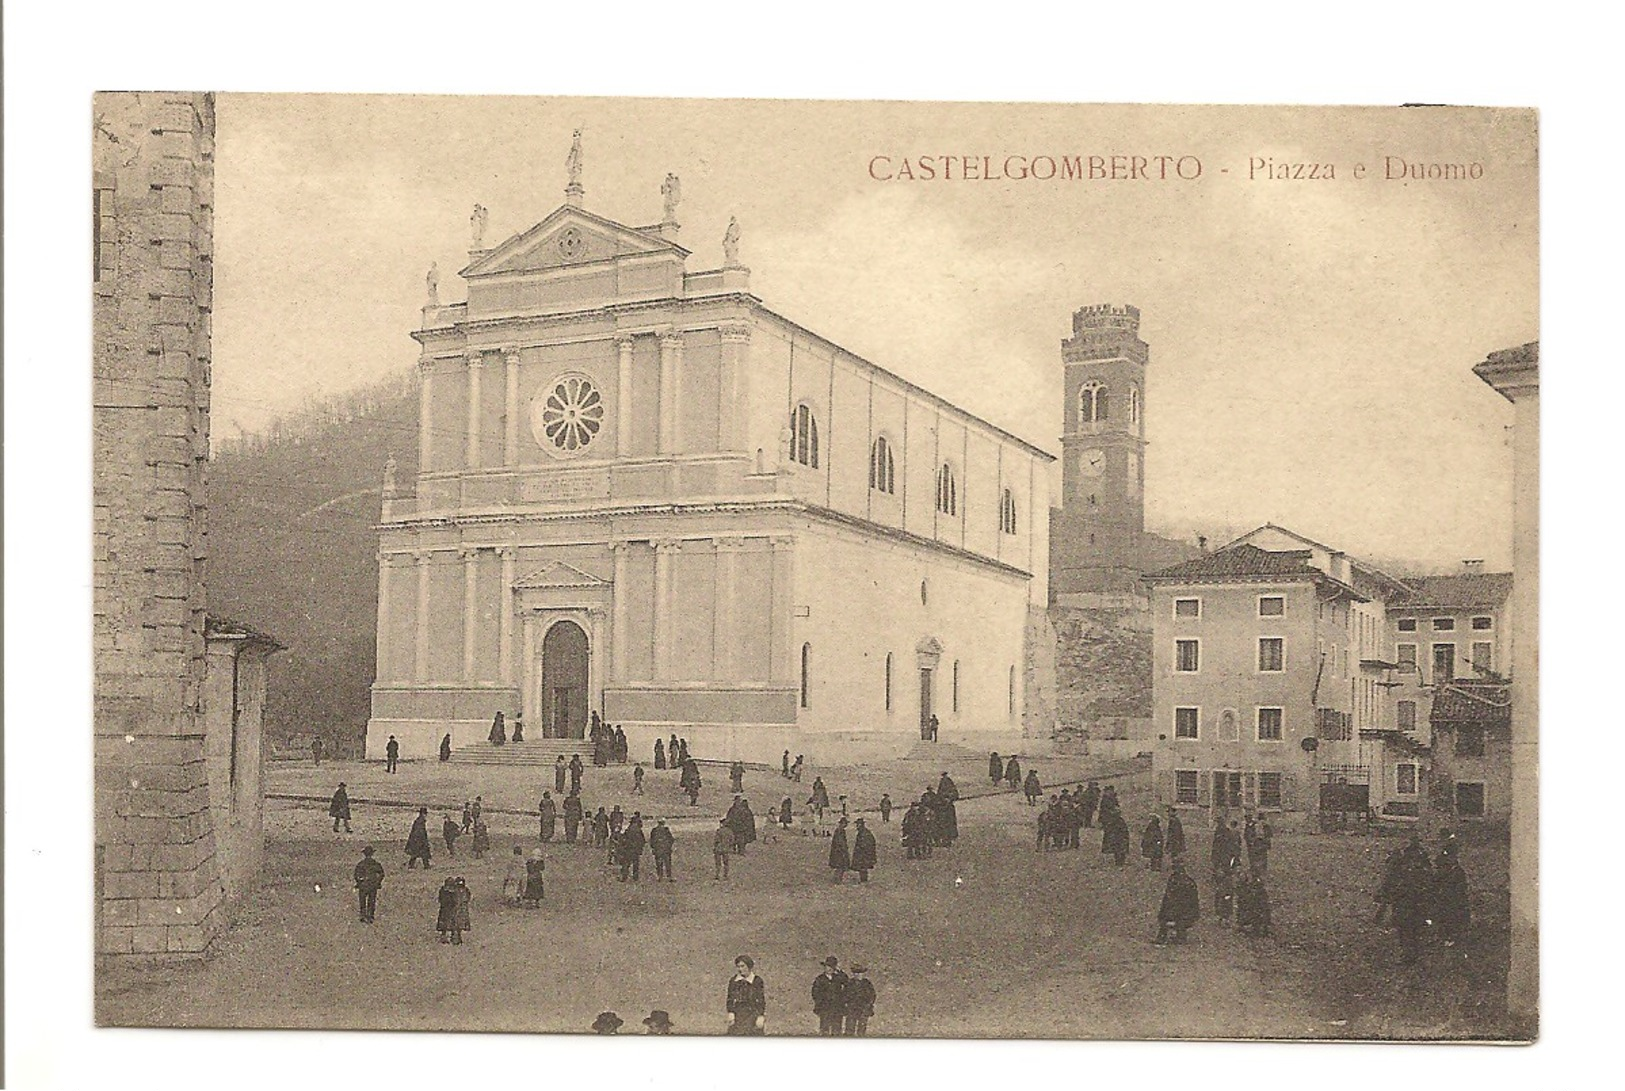 CASTELGOMBERTO - PIAZZA E DUOMO - Vicenza